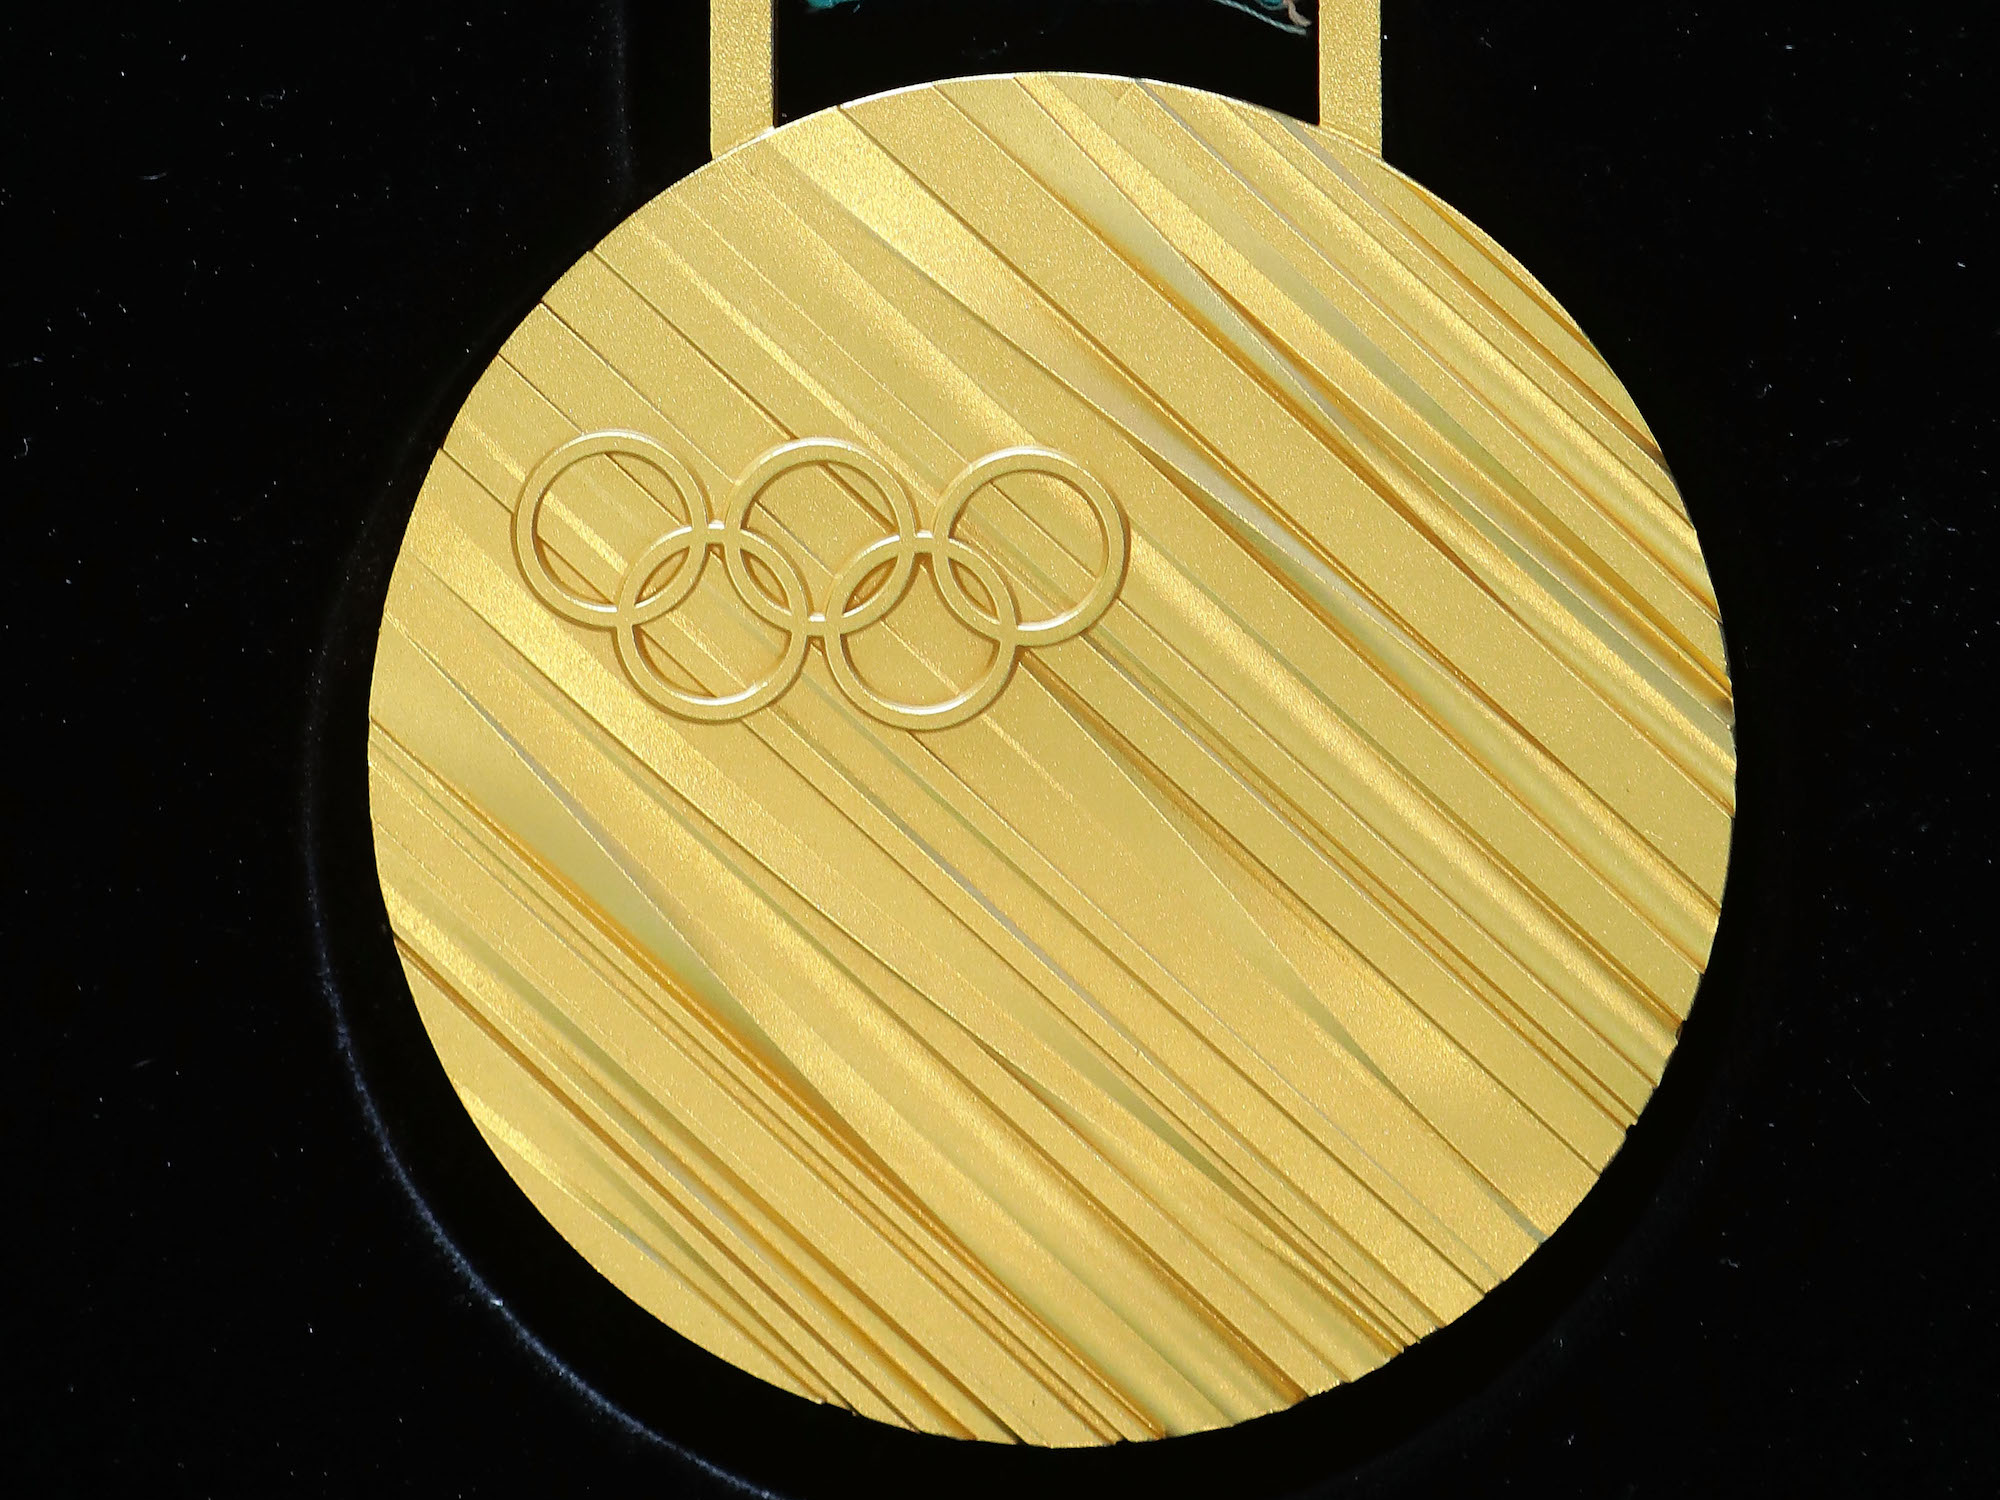 Золотая медаль олимпийских игр россия